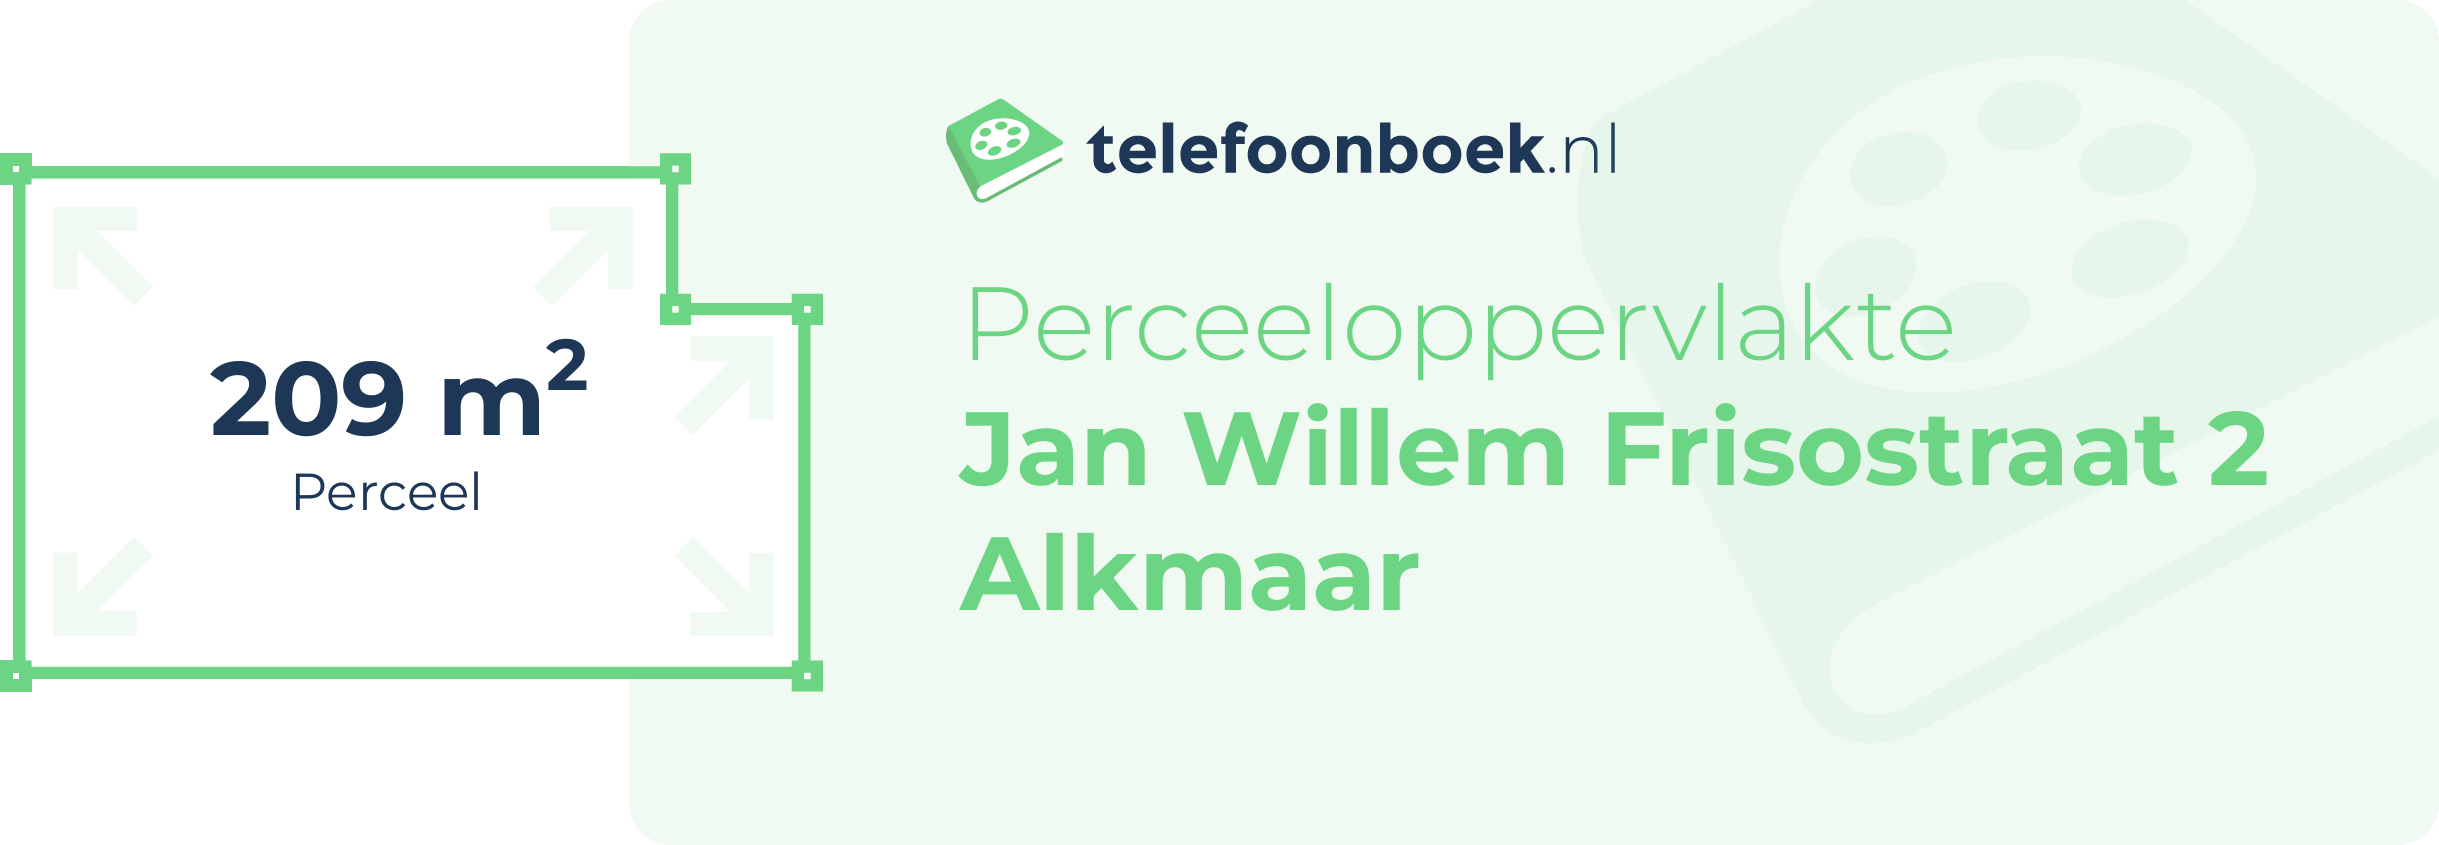 Perceeloppervlakte Jan Willem Frisostraat 2 Alkmaar